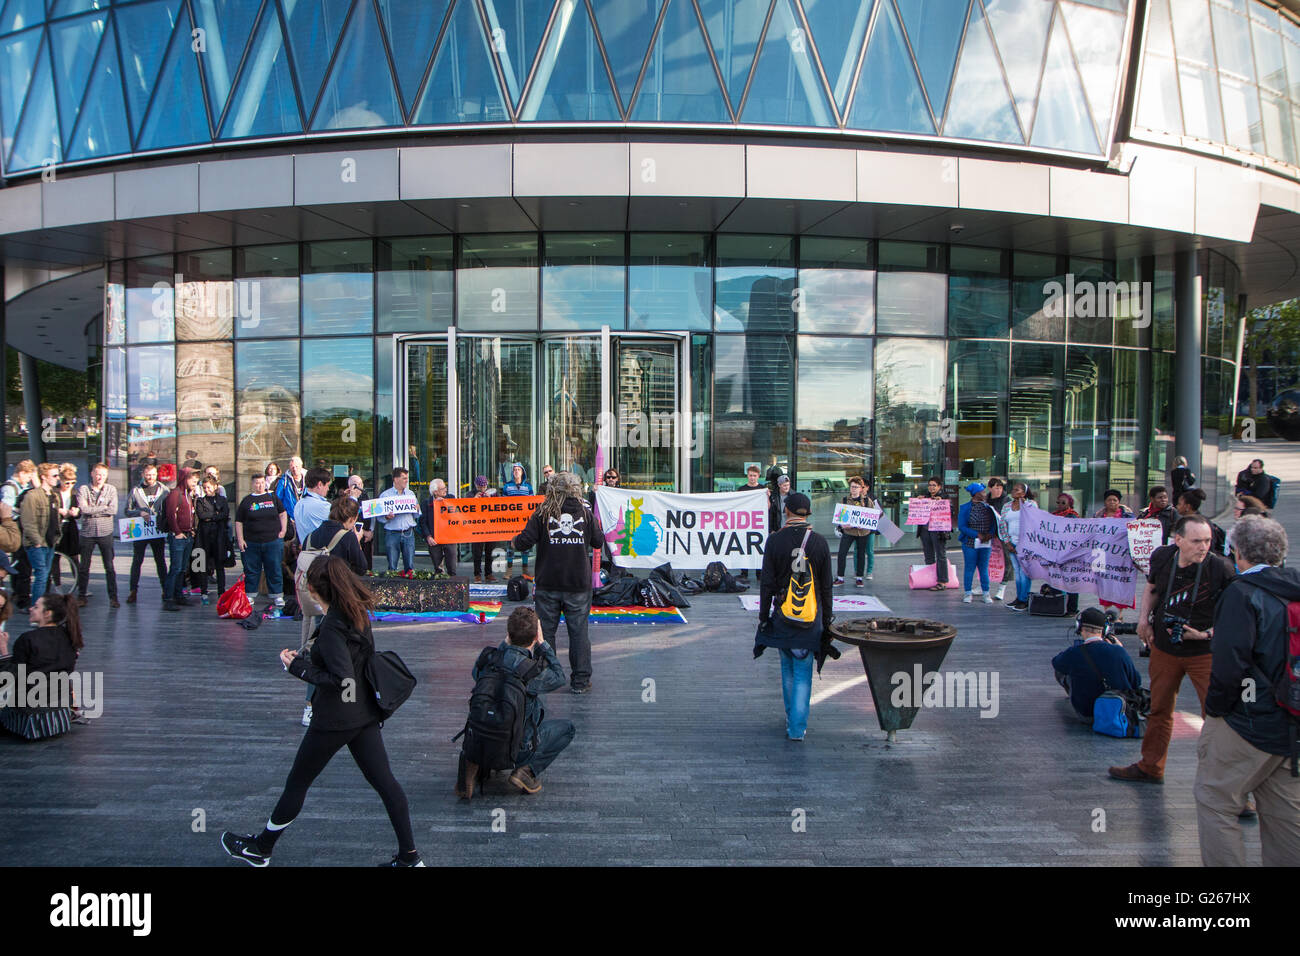 Londres, Royaume-Uni. 24 mai, 2016. Pas de fierté dans la guerre manifestation devant l'hôtel de ville, London Crédit : Zefrog/Alamy Live News Banque D'Images